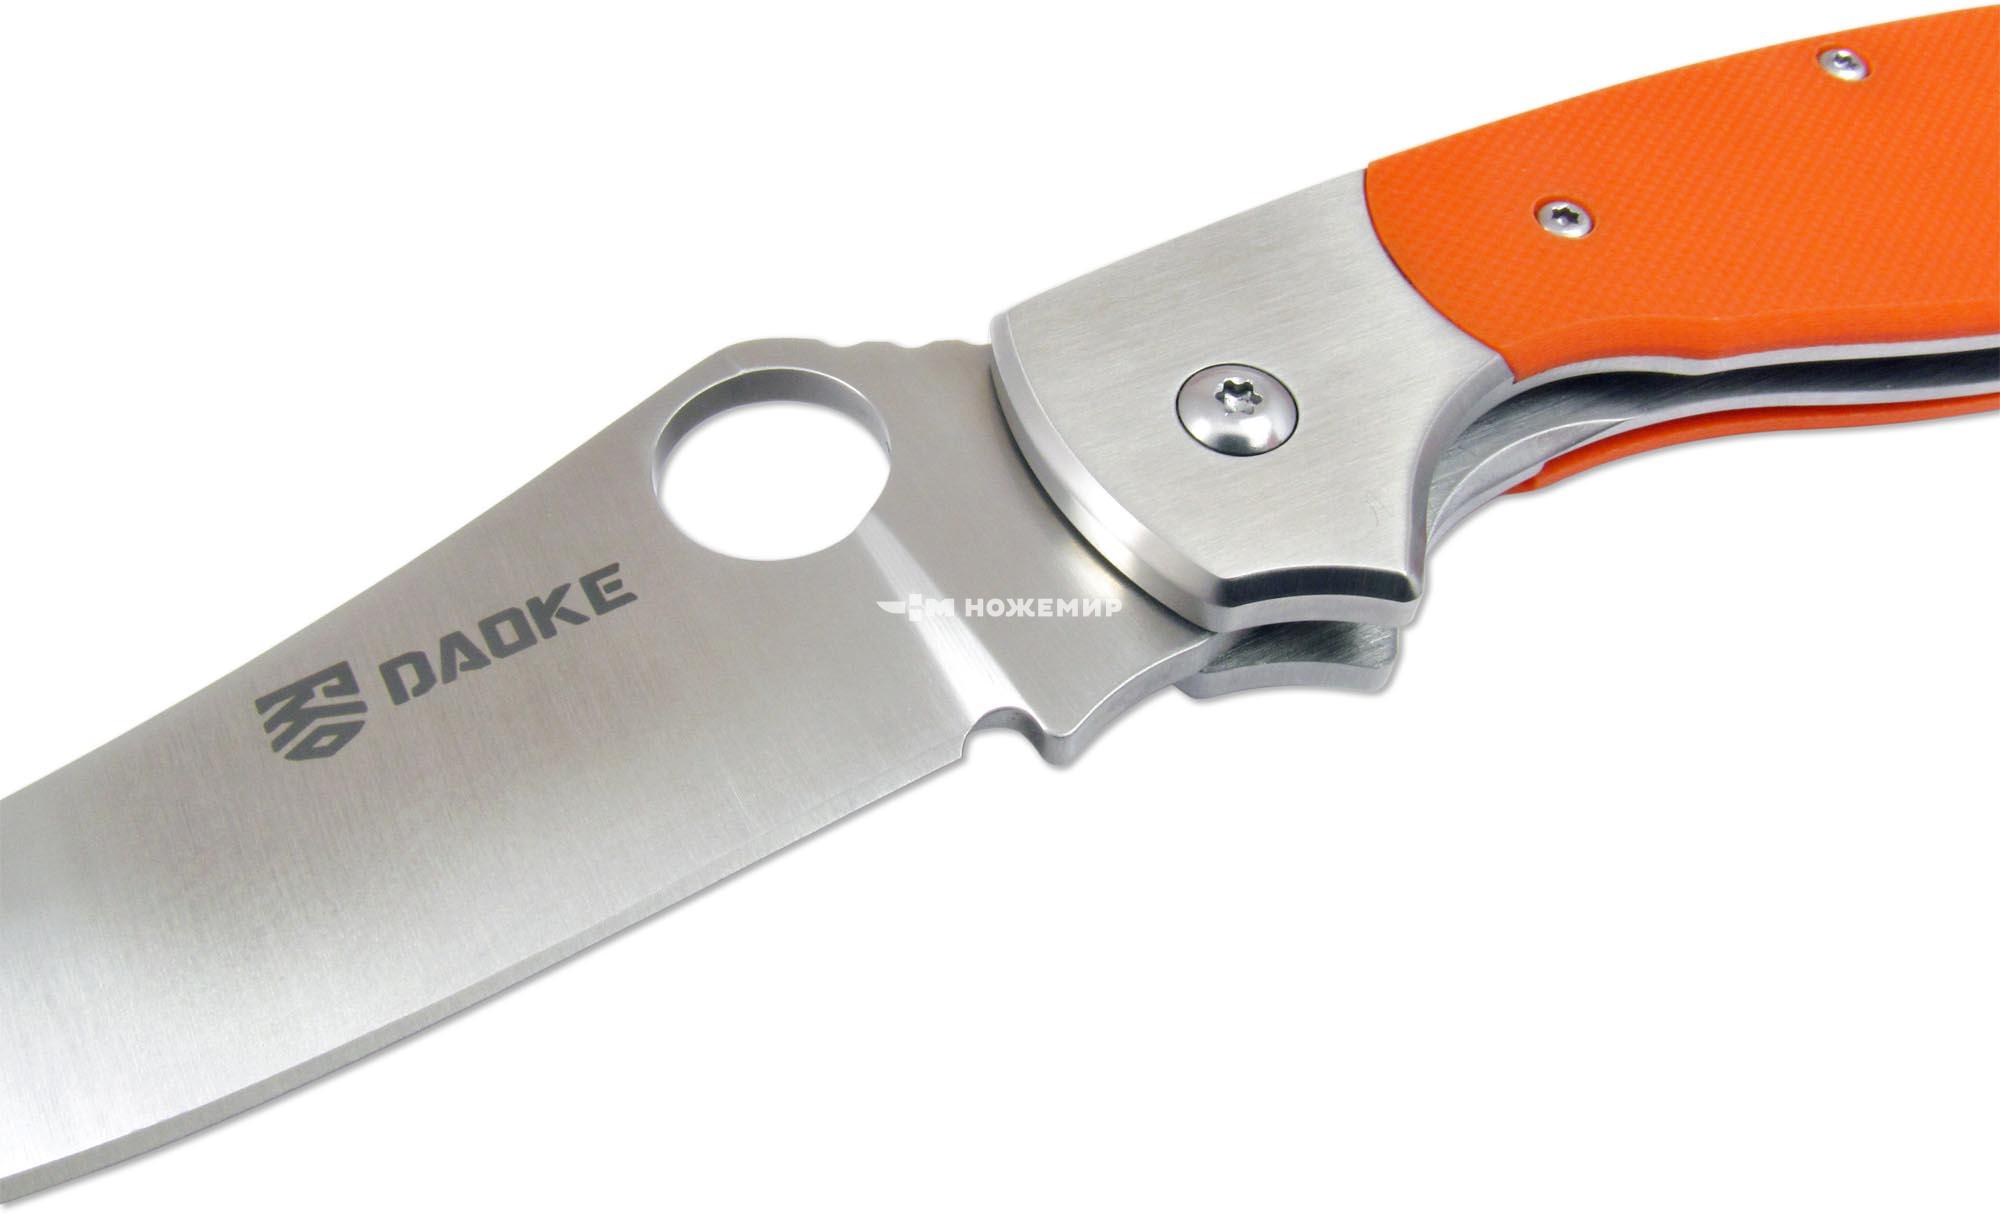 Нож складной с клинком из стали 440C и оранжевой рукоятью G-10 DAOKE D512o